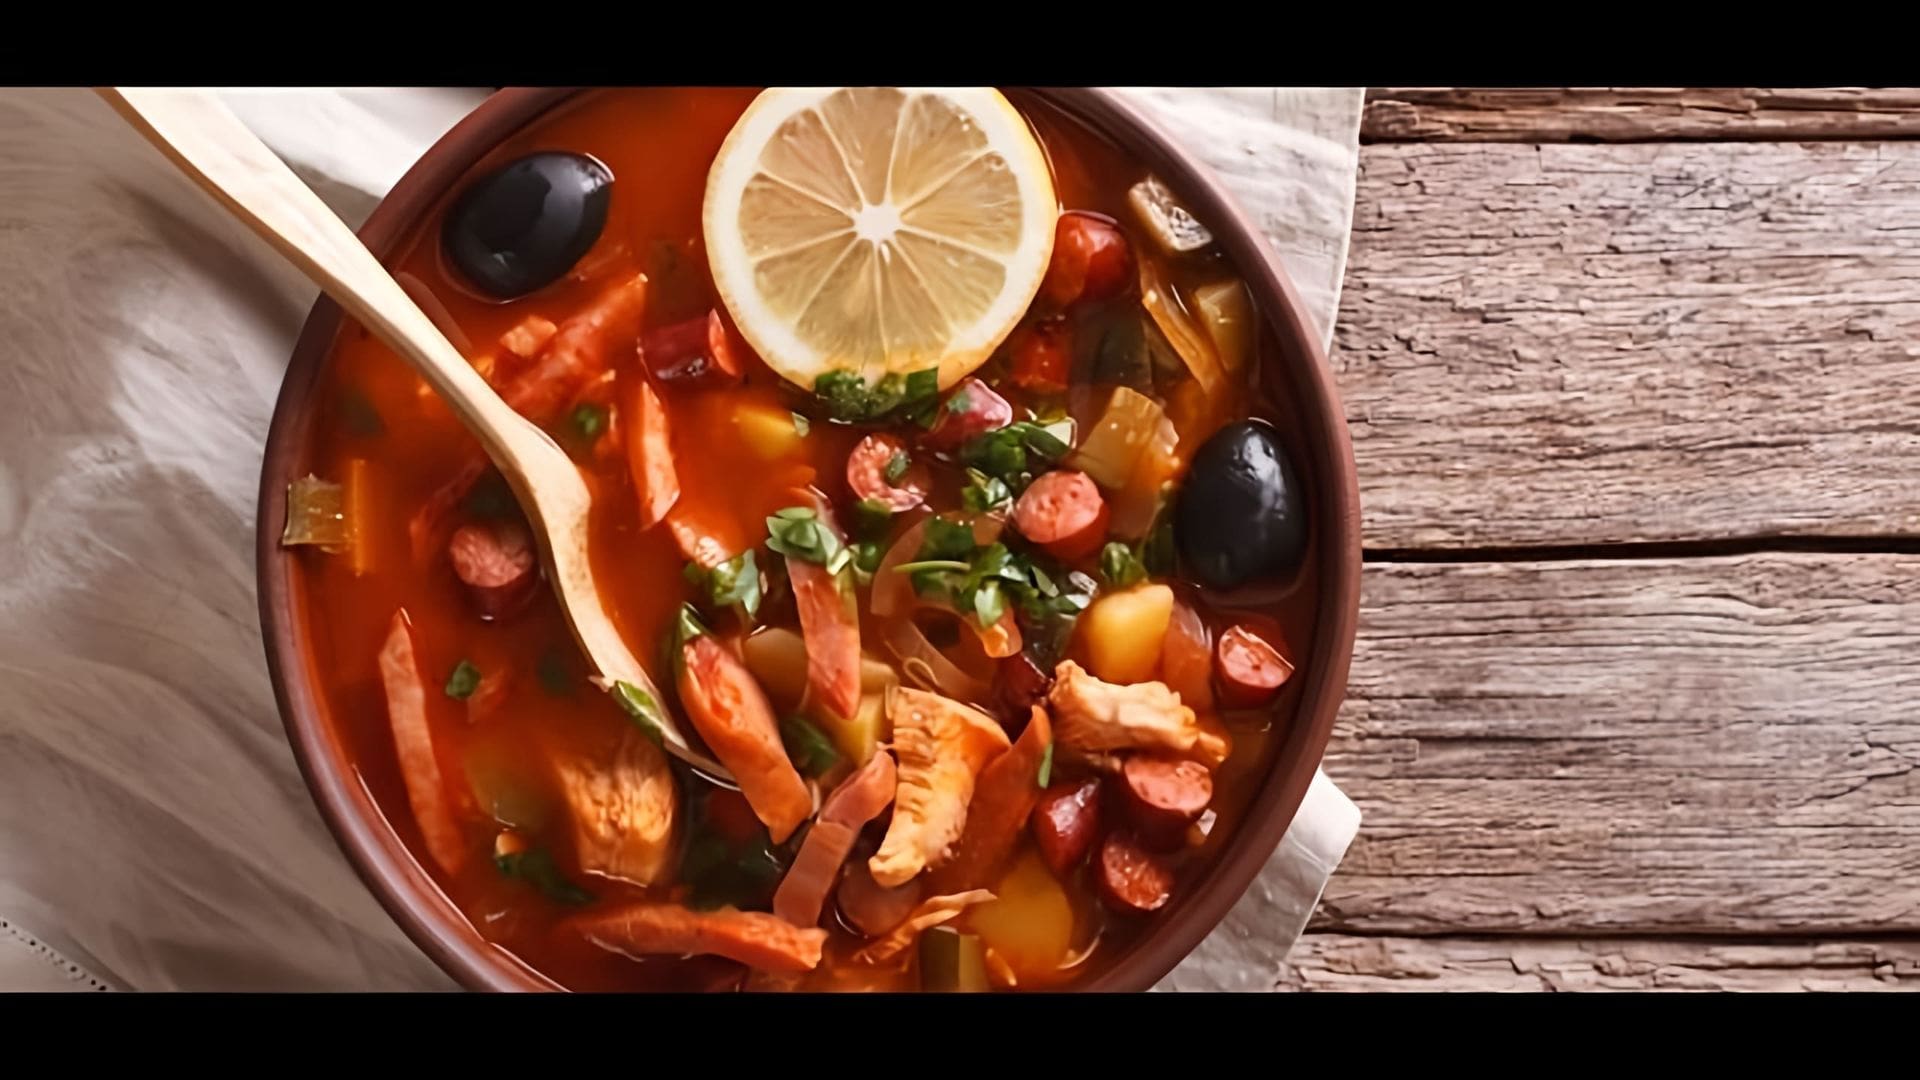 "Простой рецепт солянки" - это видео-ролик, который демонстрирует процесс приготовления вкусной и ароматной солянки